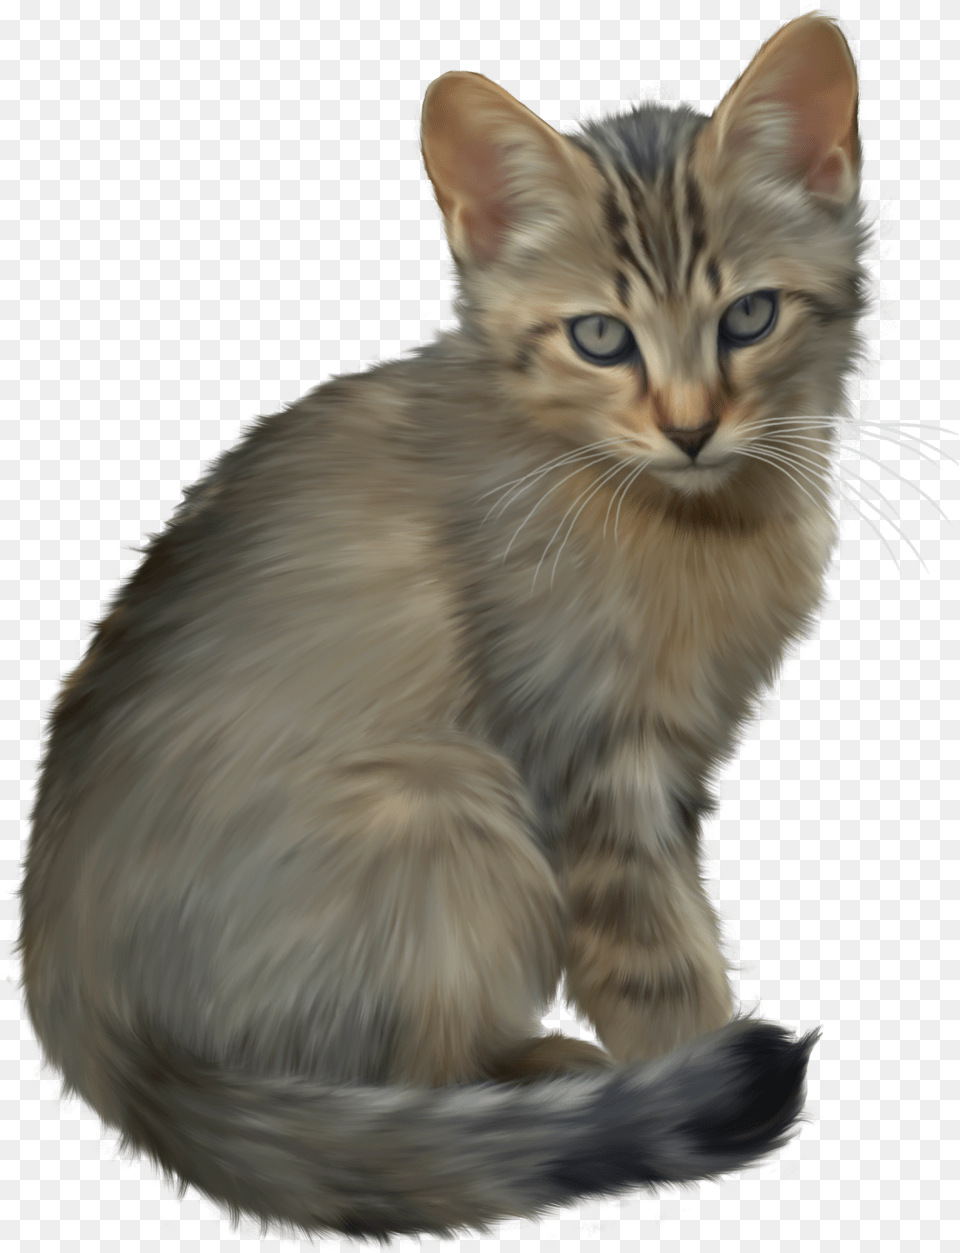 Download Kitten Transparent Background, Animal, Cat, Mammal, Pet Free Png